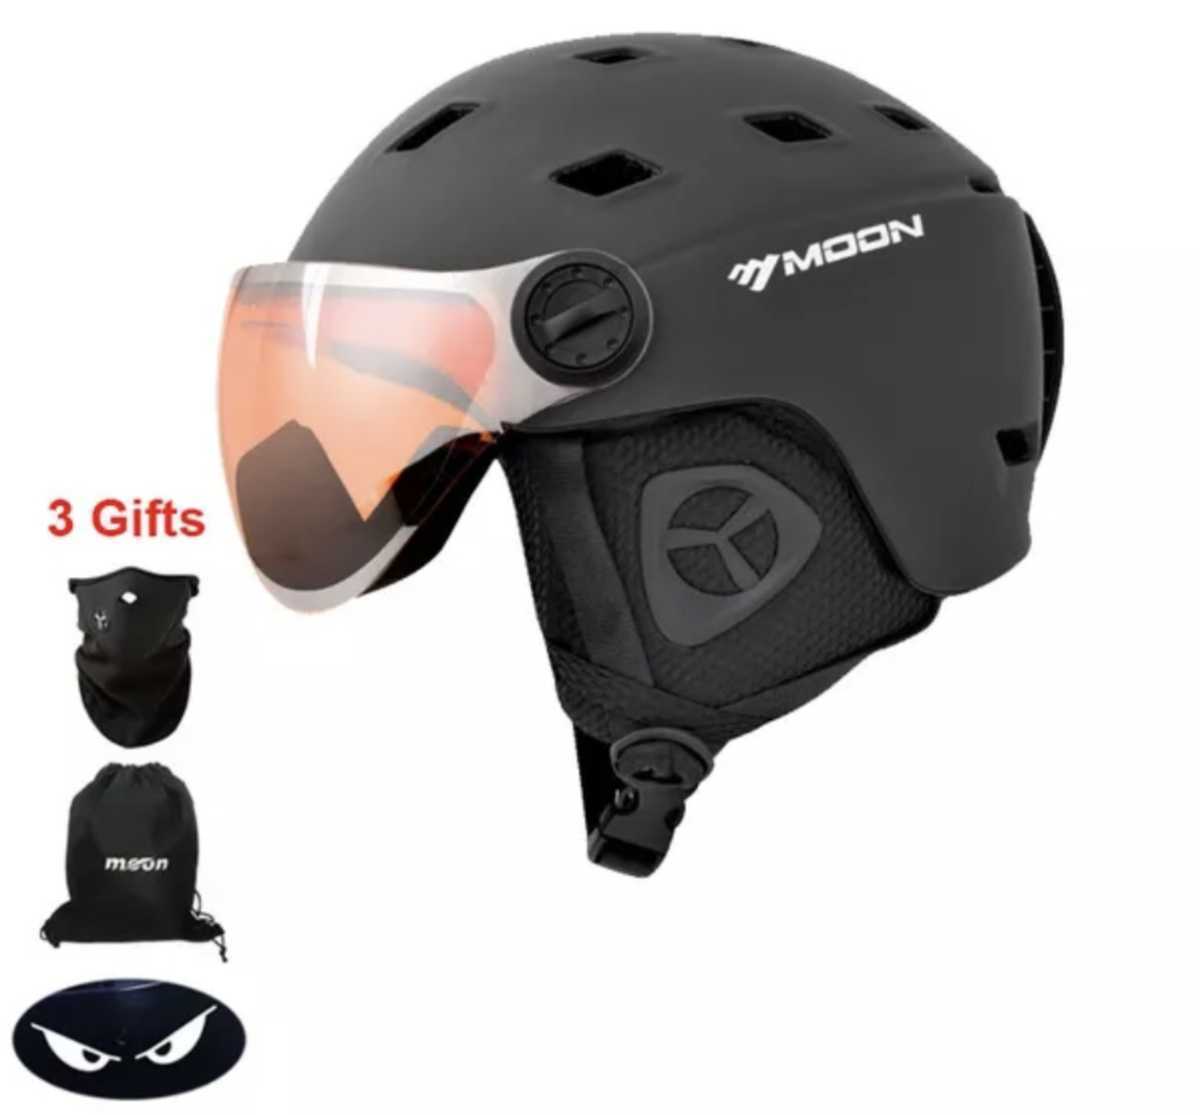 Yahoo!オークション - 新品スキー、スノボー用バイザー付ヘルメット L 